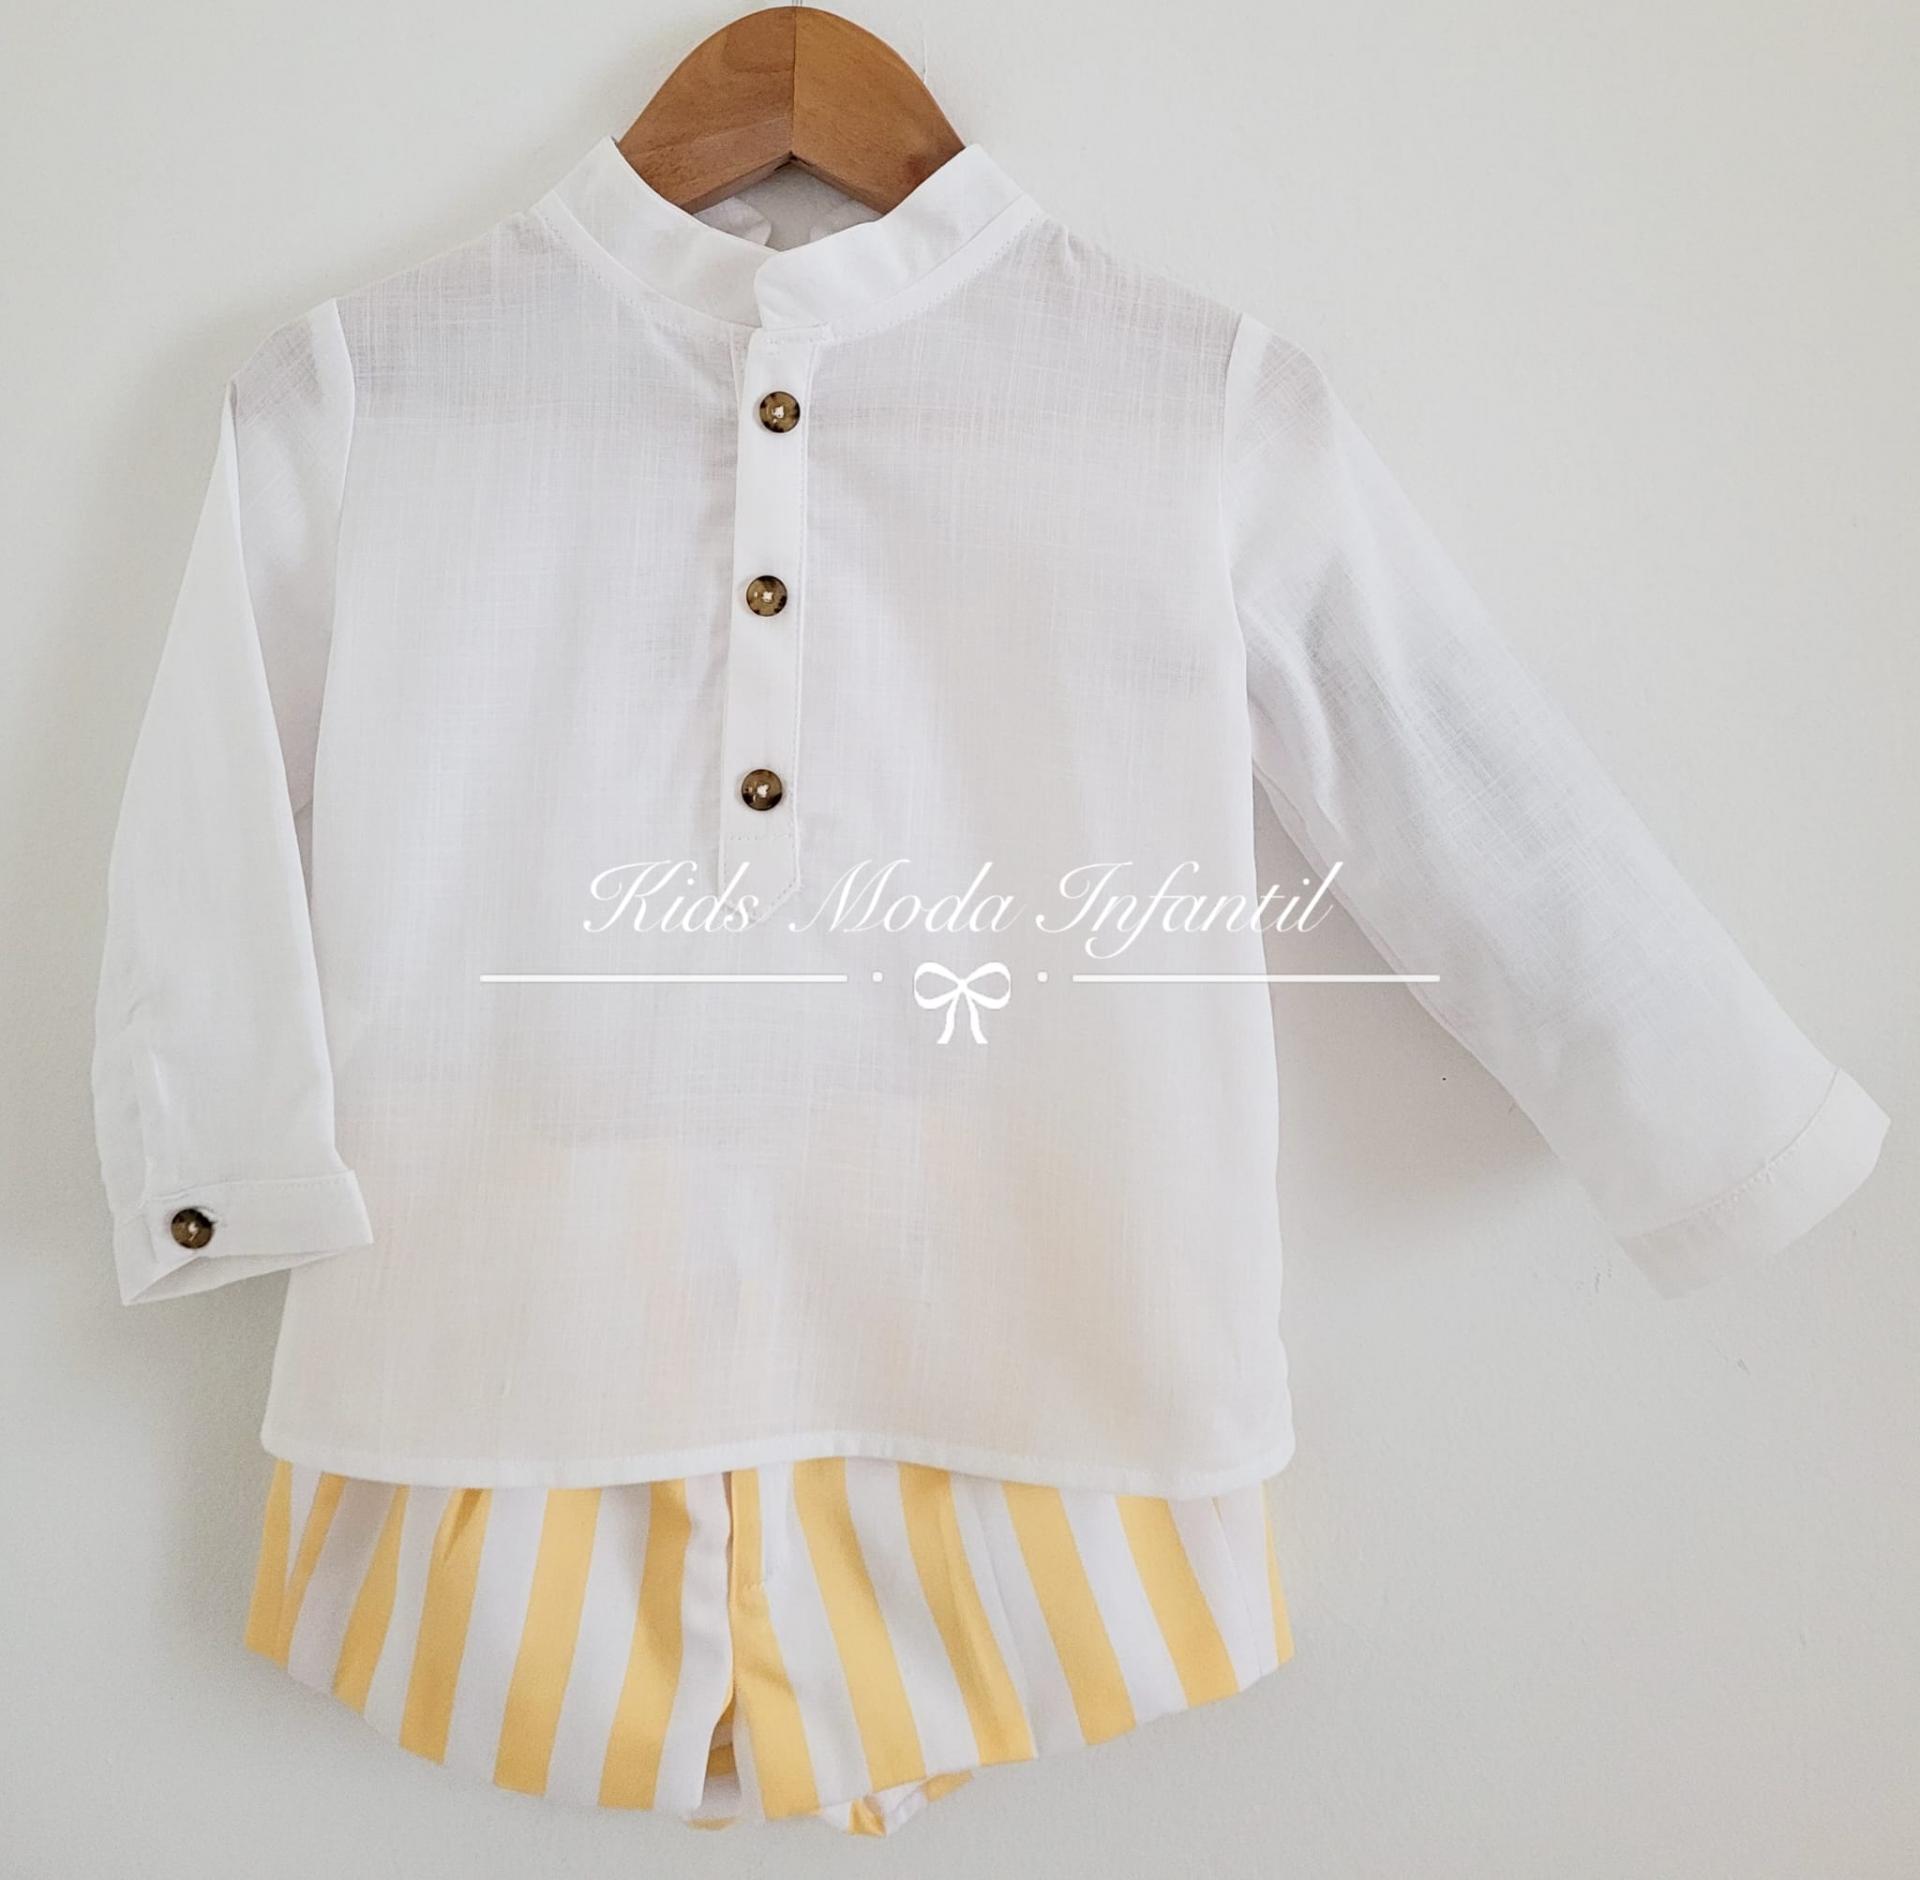 Comprar Blusa Bebé Niña online volante y lazos traseros color blanco